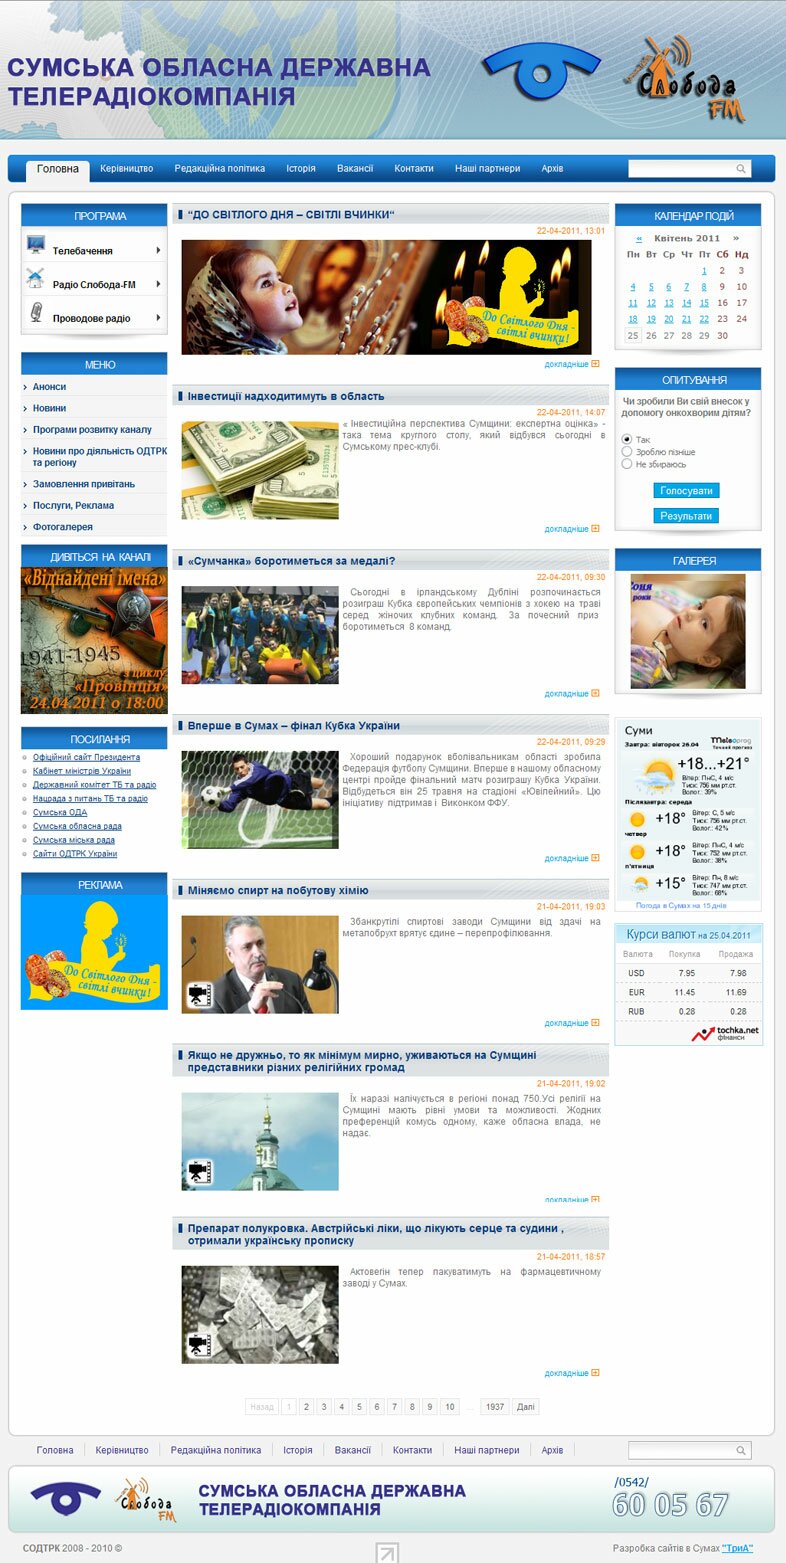 «Областная ТРК» - официальный сайт Сумской областной телерадиокомпании